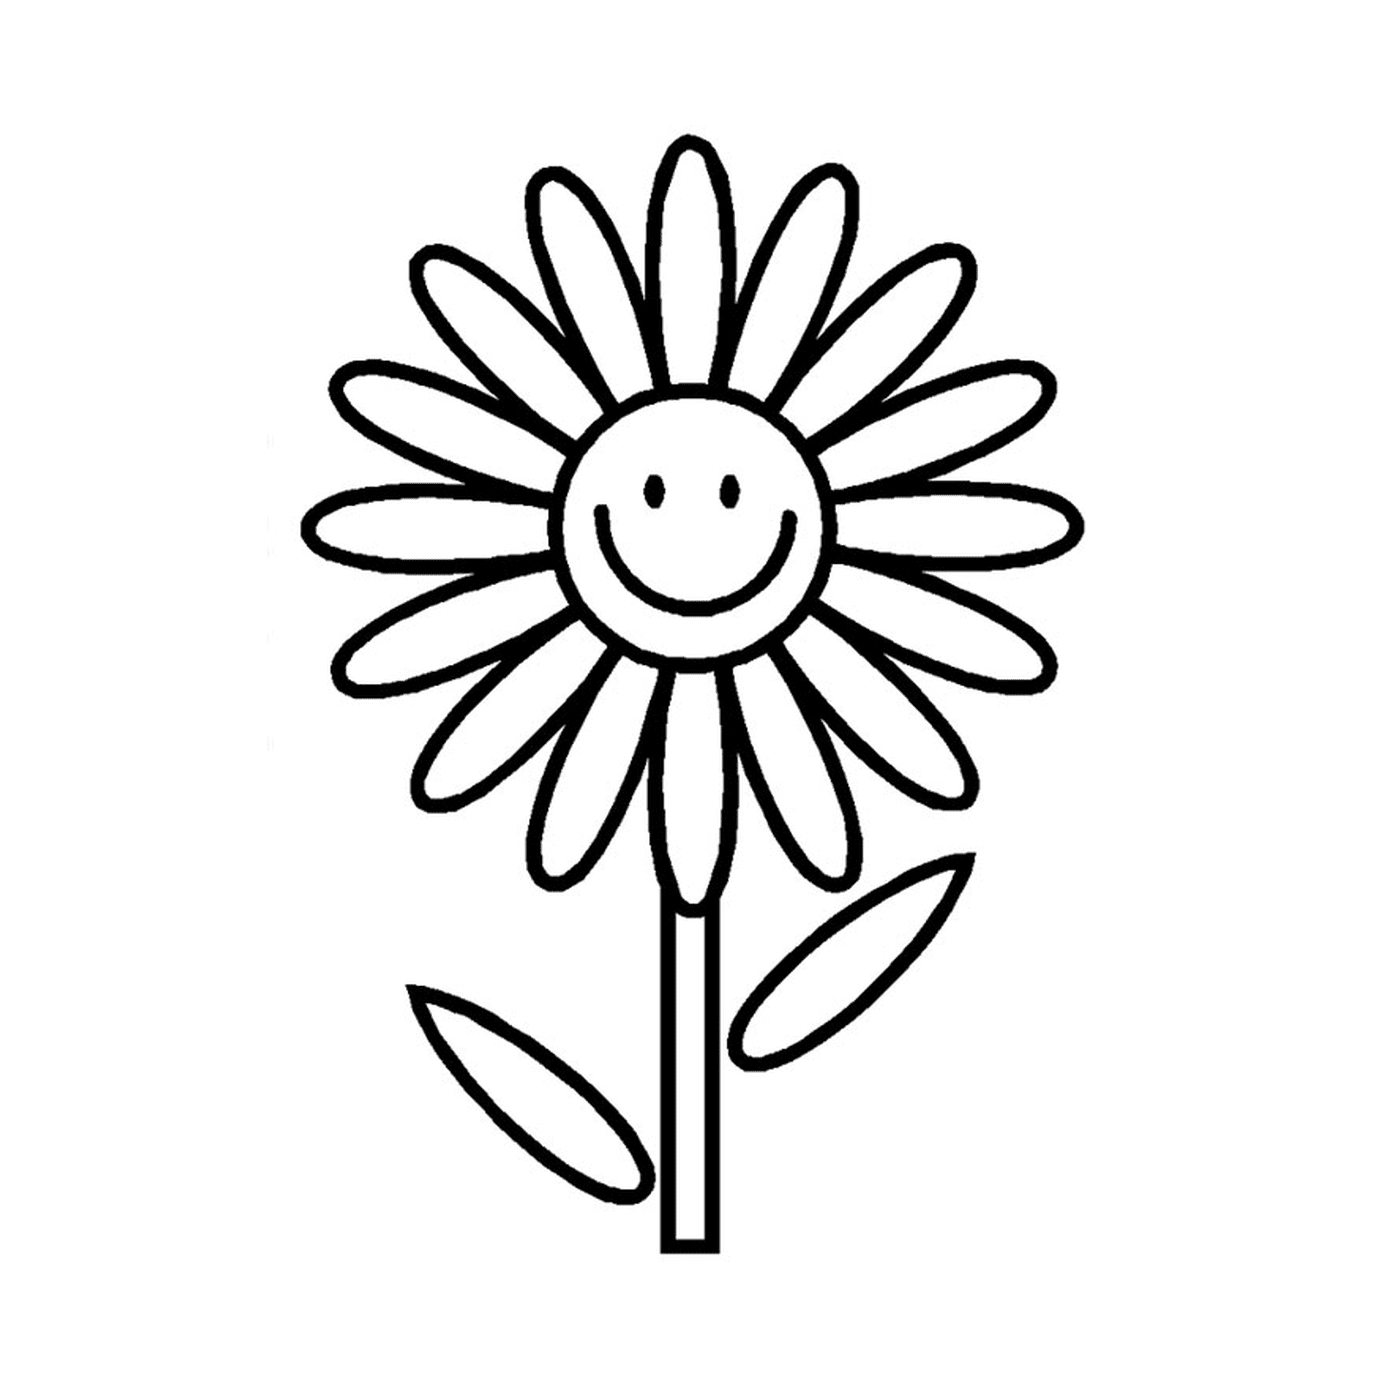  Un fiore semplice dal volto sorridente 